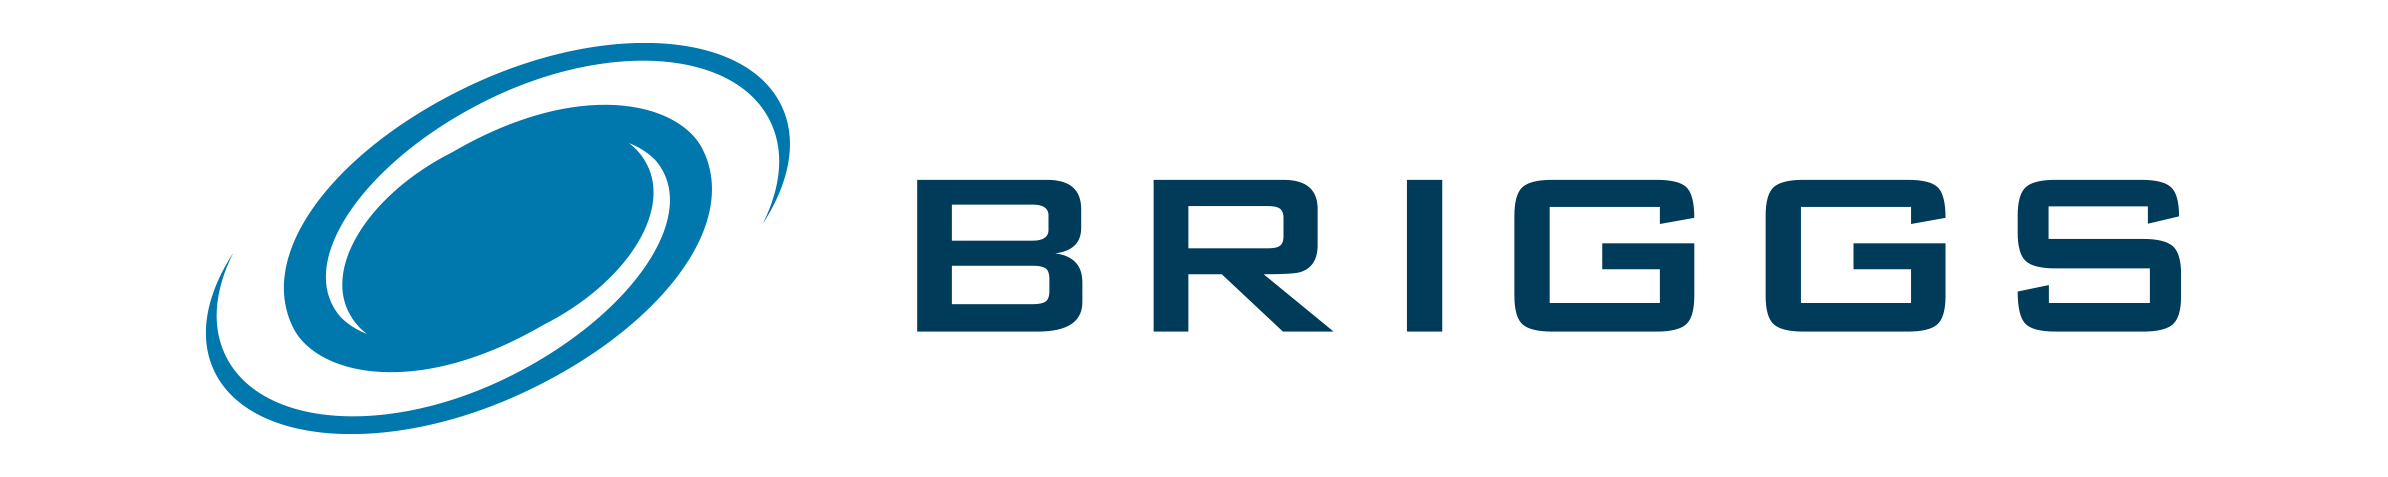 Briggs of Burton Plc wird Teil der Unternehmensgruppe.